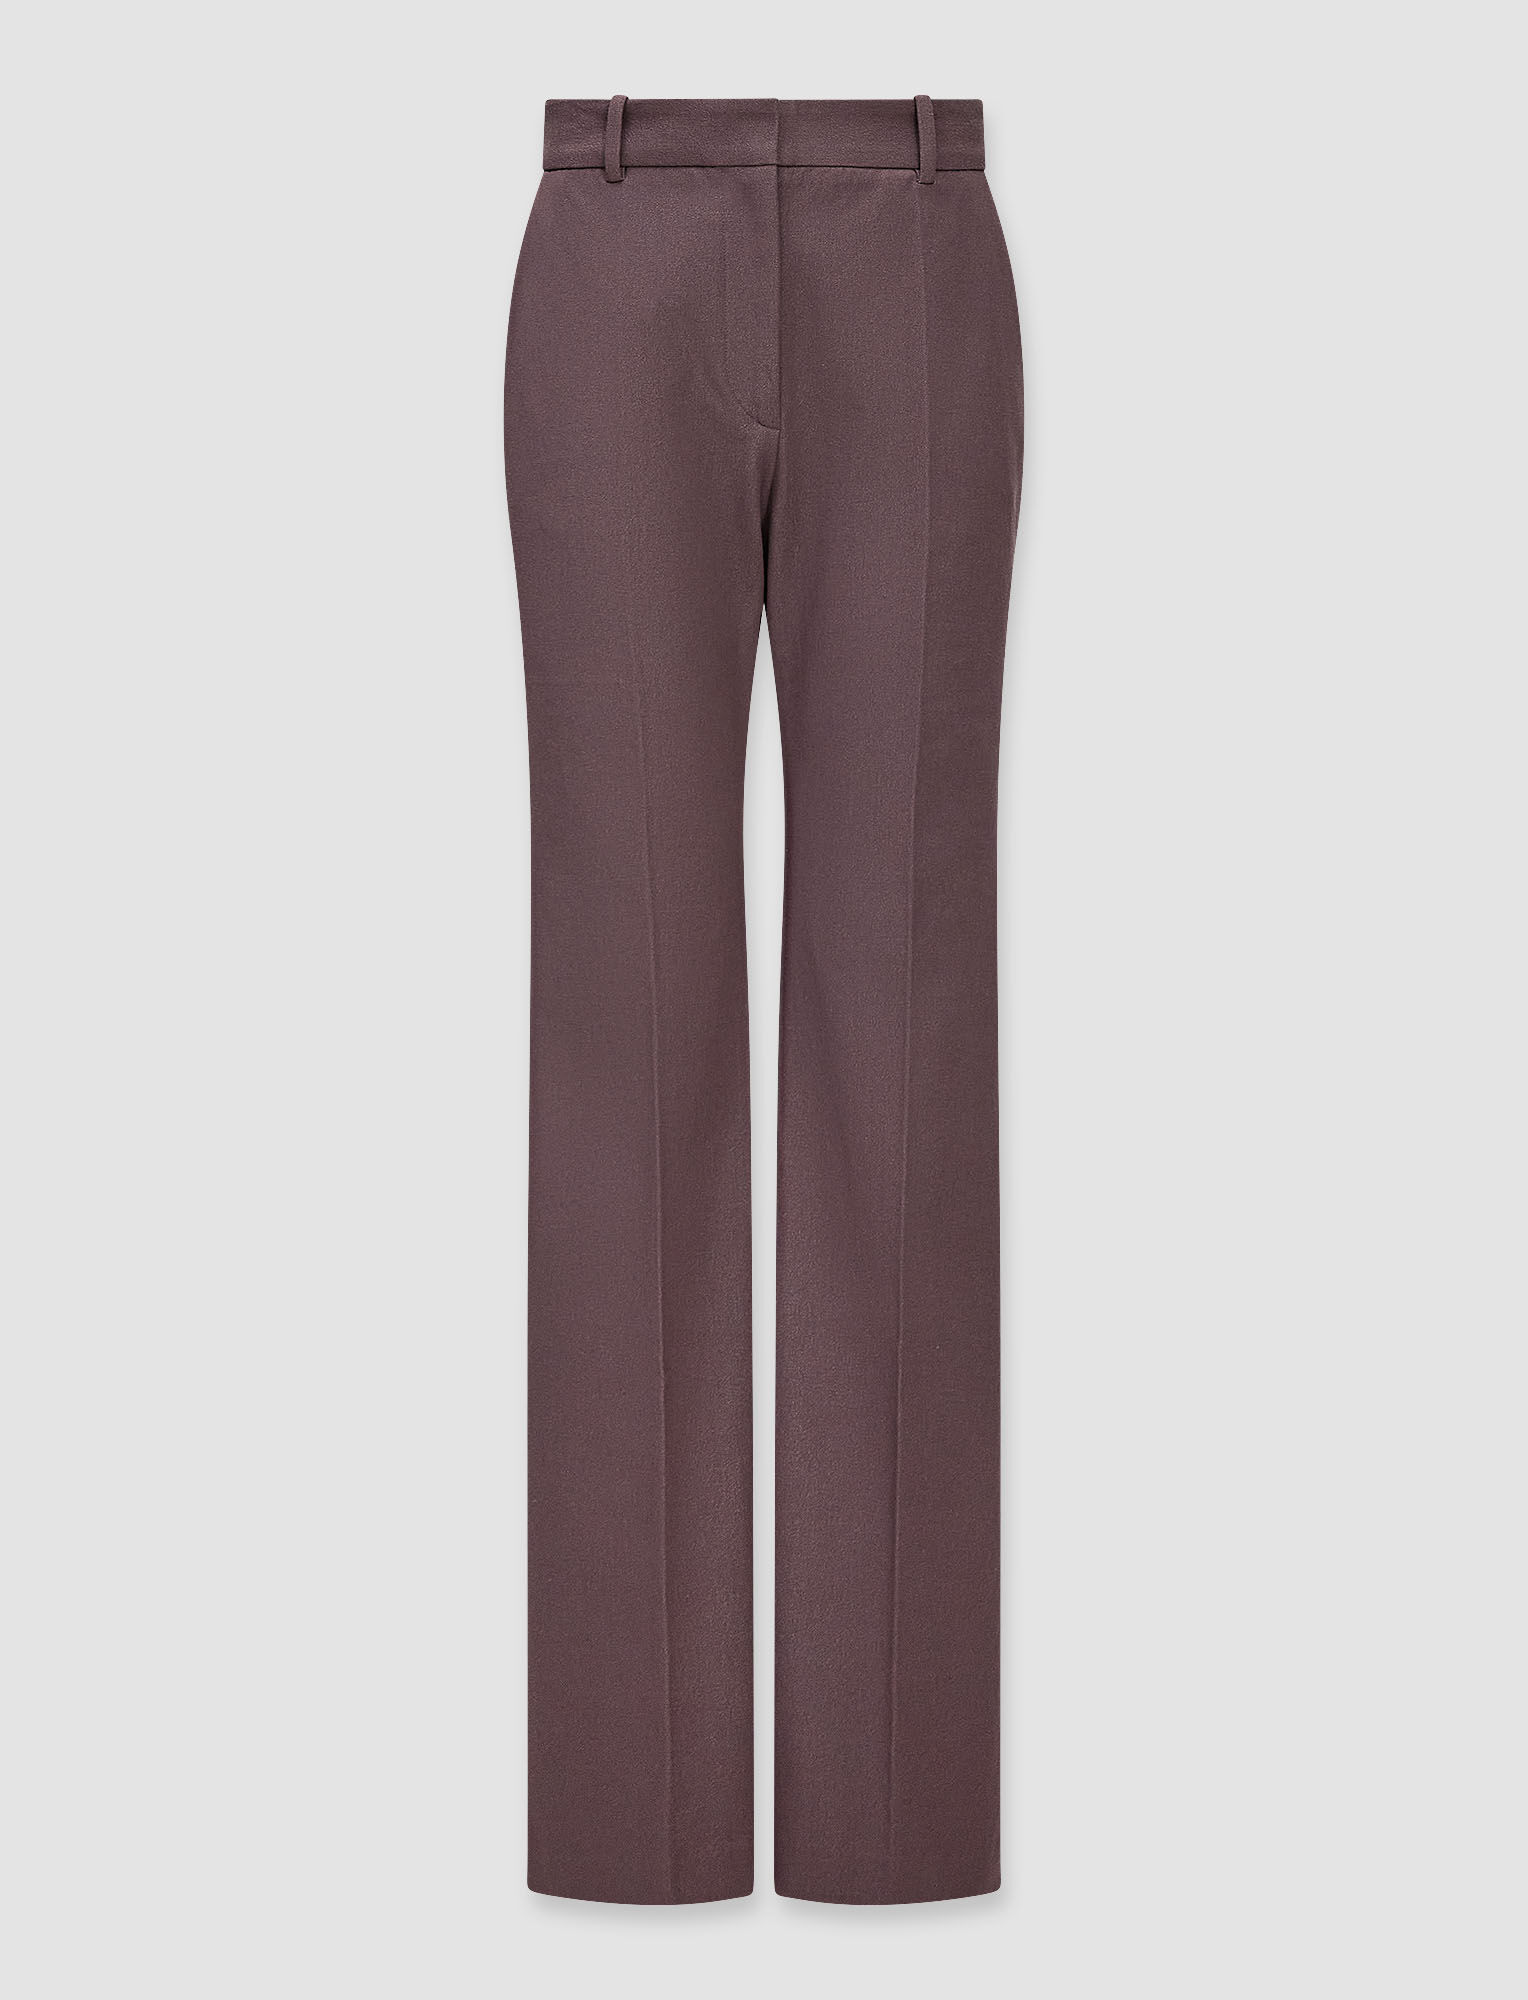 Joseph, Gabardine Stretch Tafira Trousers – Shorter Length, in Truffle